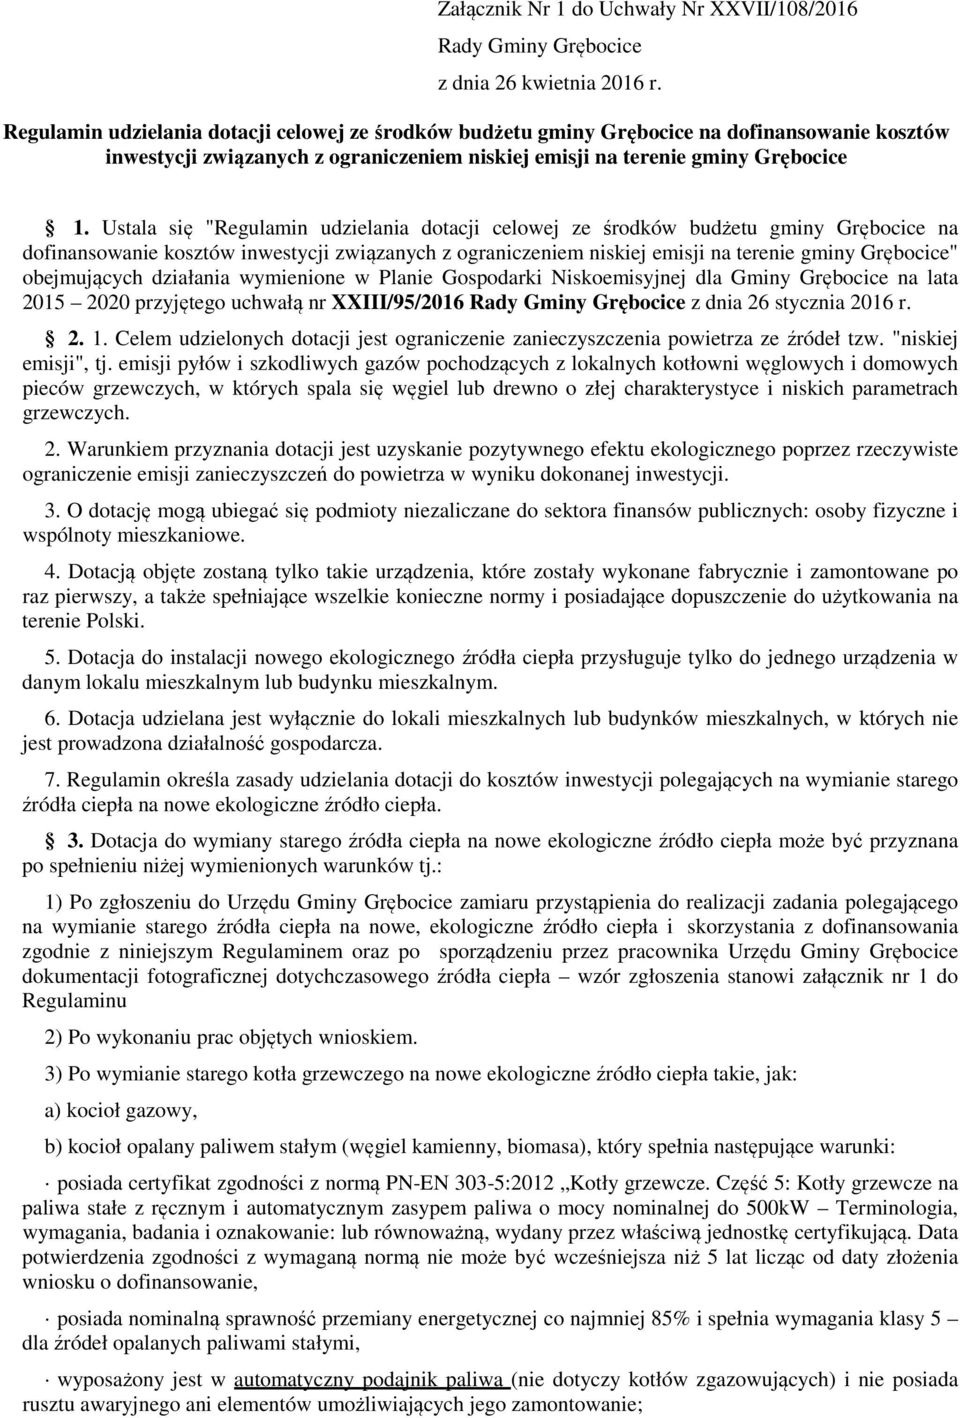 Ustala się "Regulamin udzielania dotacji celowej ze środków budżetu gminy Grębocice na dofinansowanie kosztów inwestycji związanych z ograniczeniem niskiej emisji na terenie gminy Grębocice"